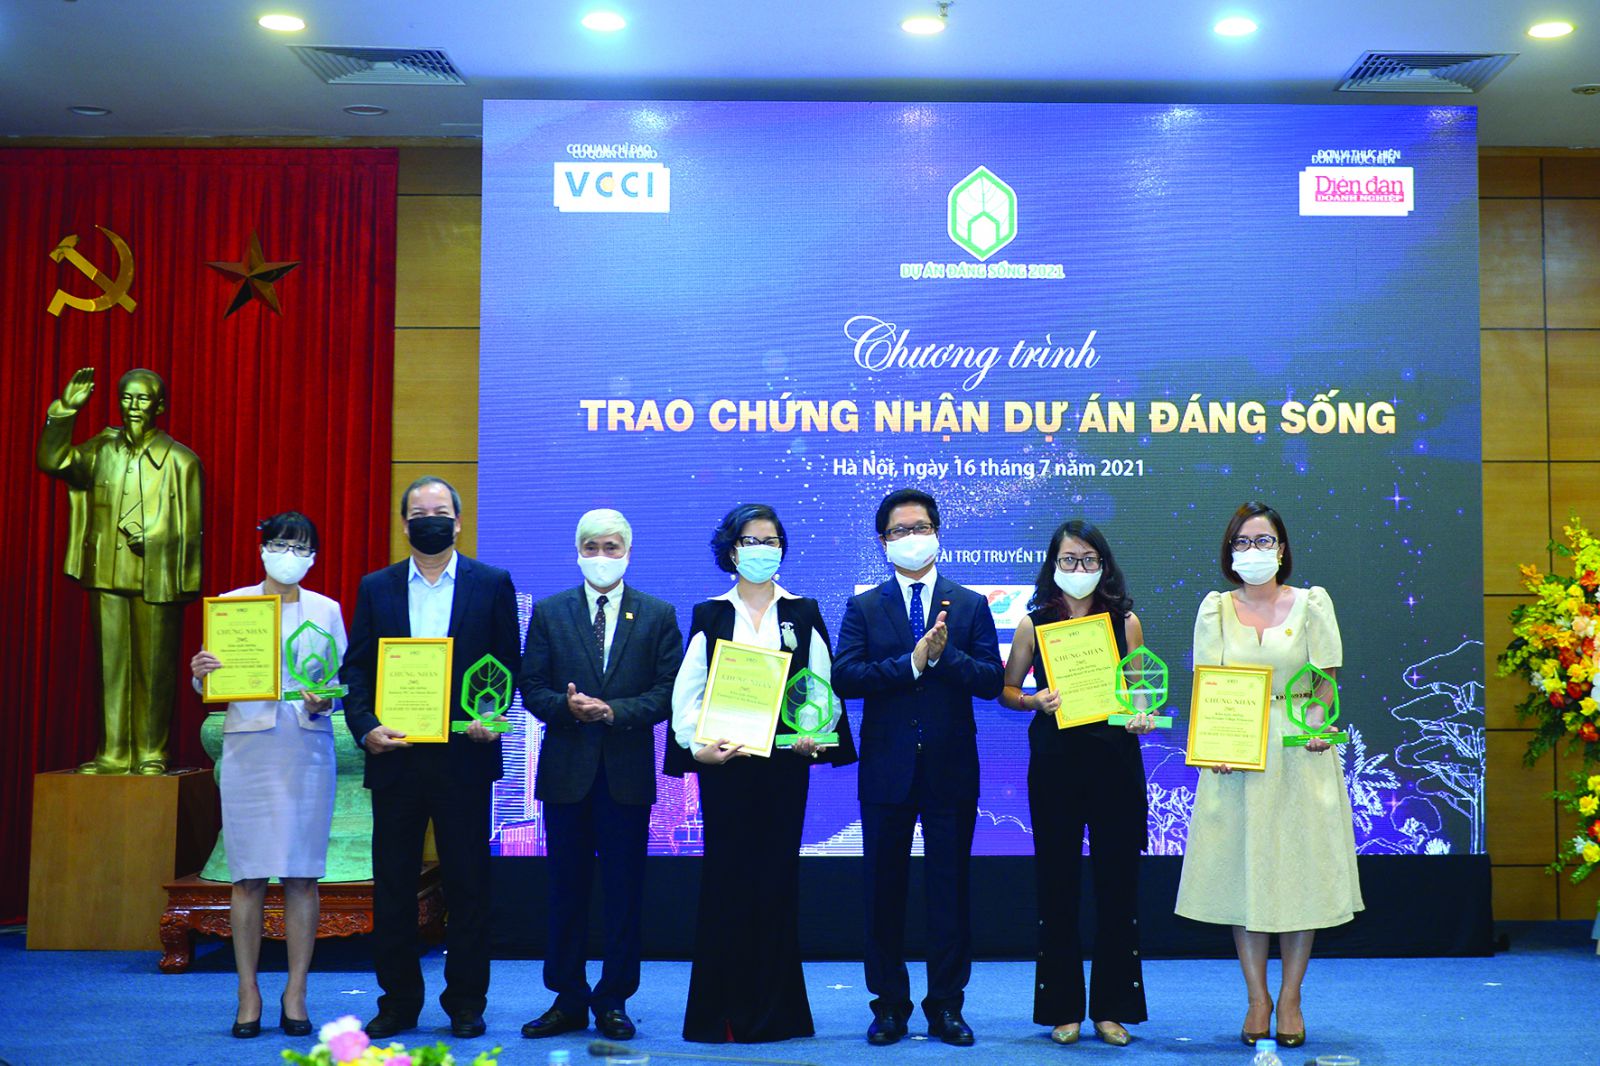  TS Vũ Tiến Lộc, Chủ tịch VCCI và KTS Phạm Thanh Tùng, Chánh Văn phòng Hội KTS Việt Nam trao chứng nhận Khu Nghỉ dưỡng được yêu thích nhất năm 2021.